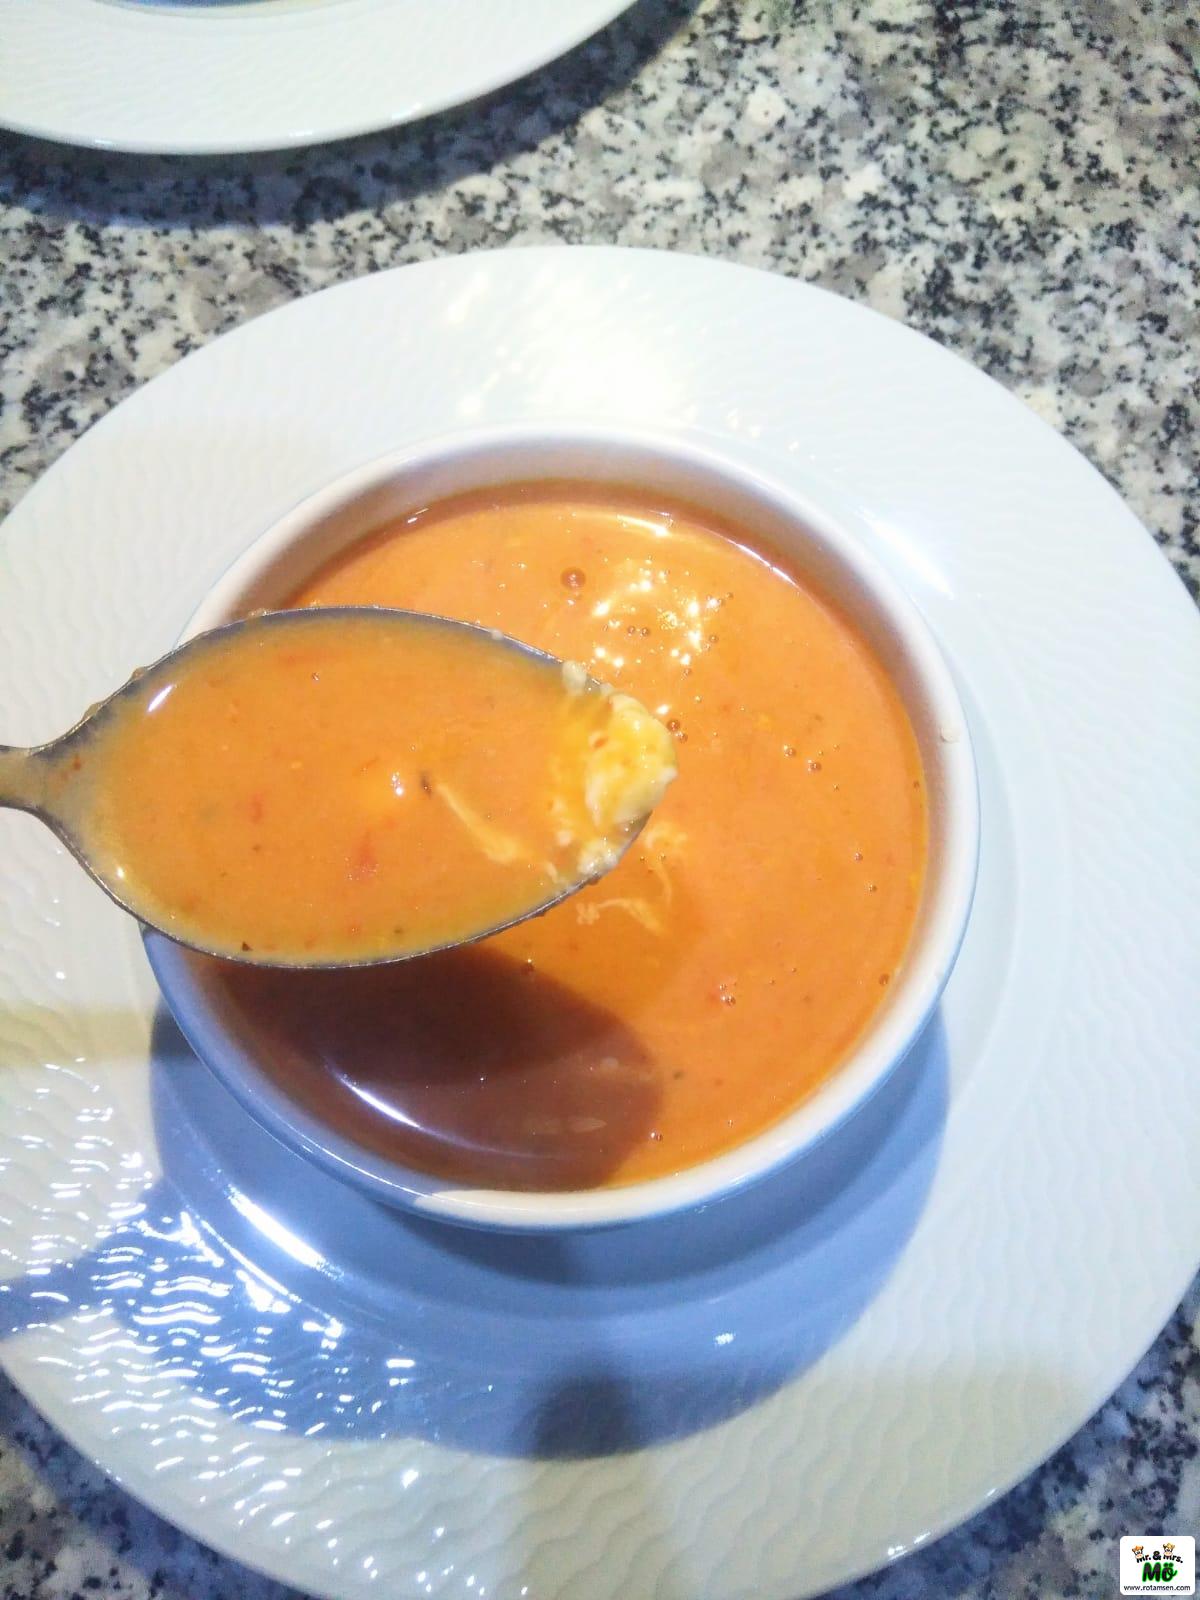 Köz Domates Çorbası 12 – koz domates corbasi 1